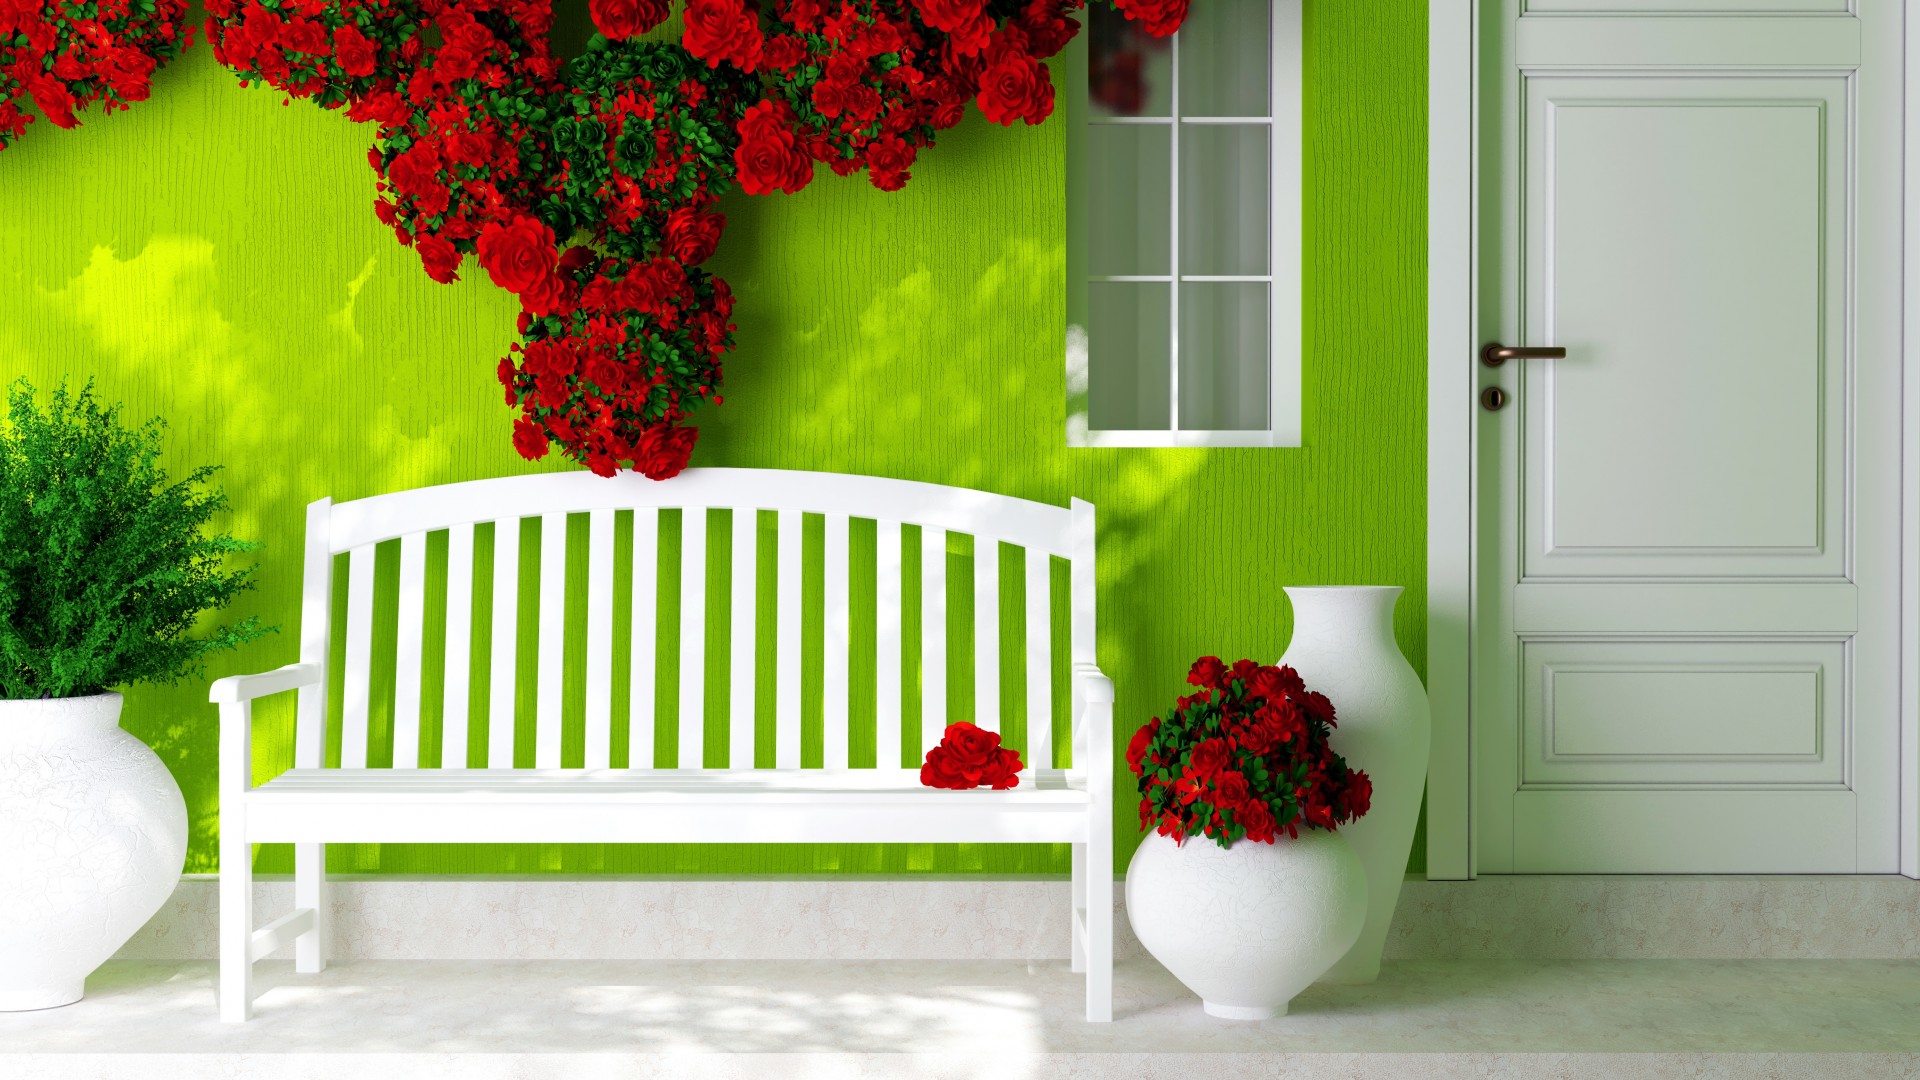 门,窗,板凳,鲜花,绿色背景墙,温馨家居桌面高清壁纸